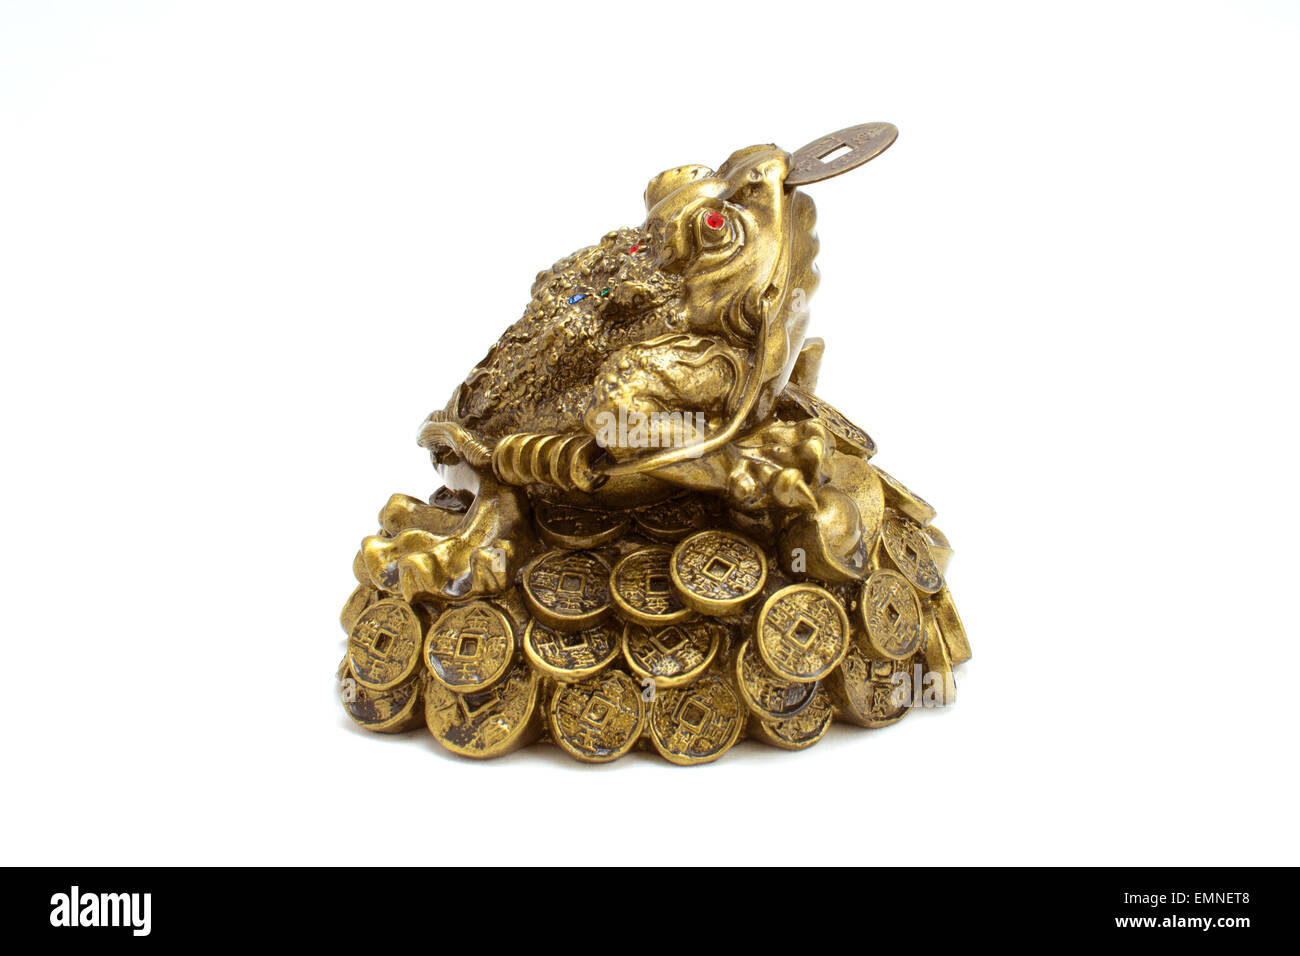 A tre gambe denaro toad seduto su una pila di monete d'oro. Foto Stock